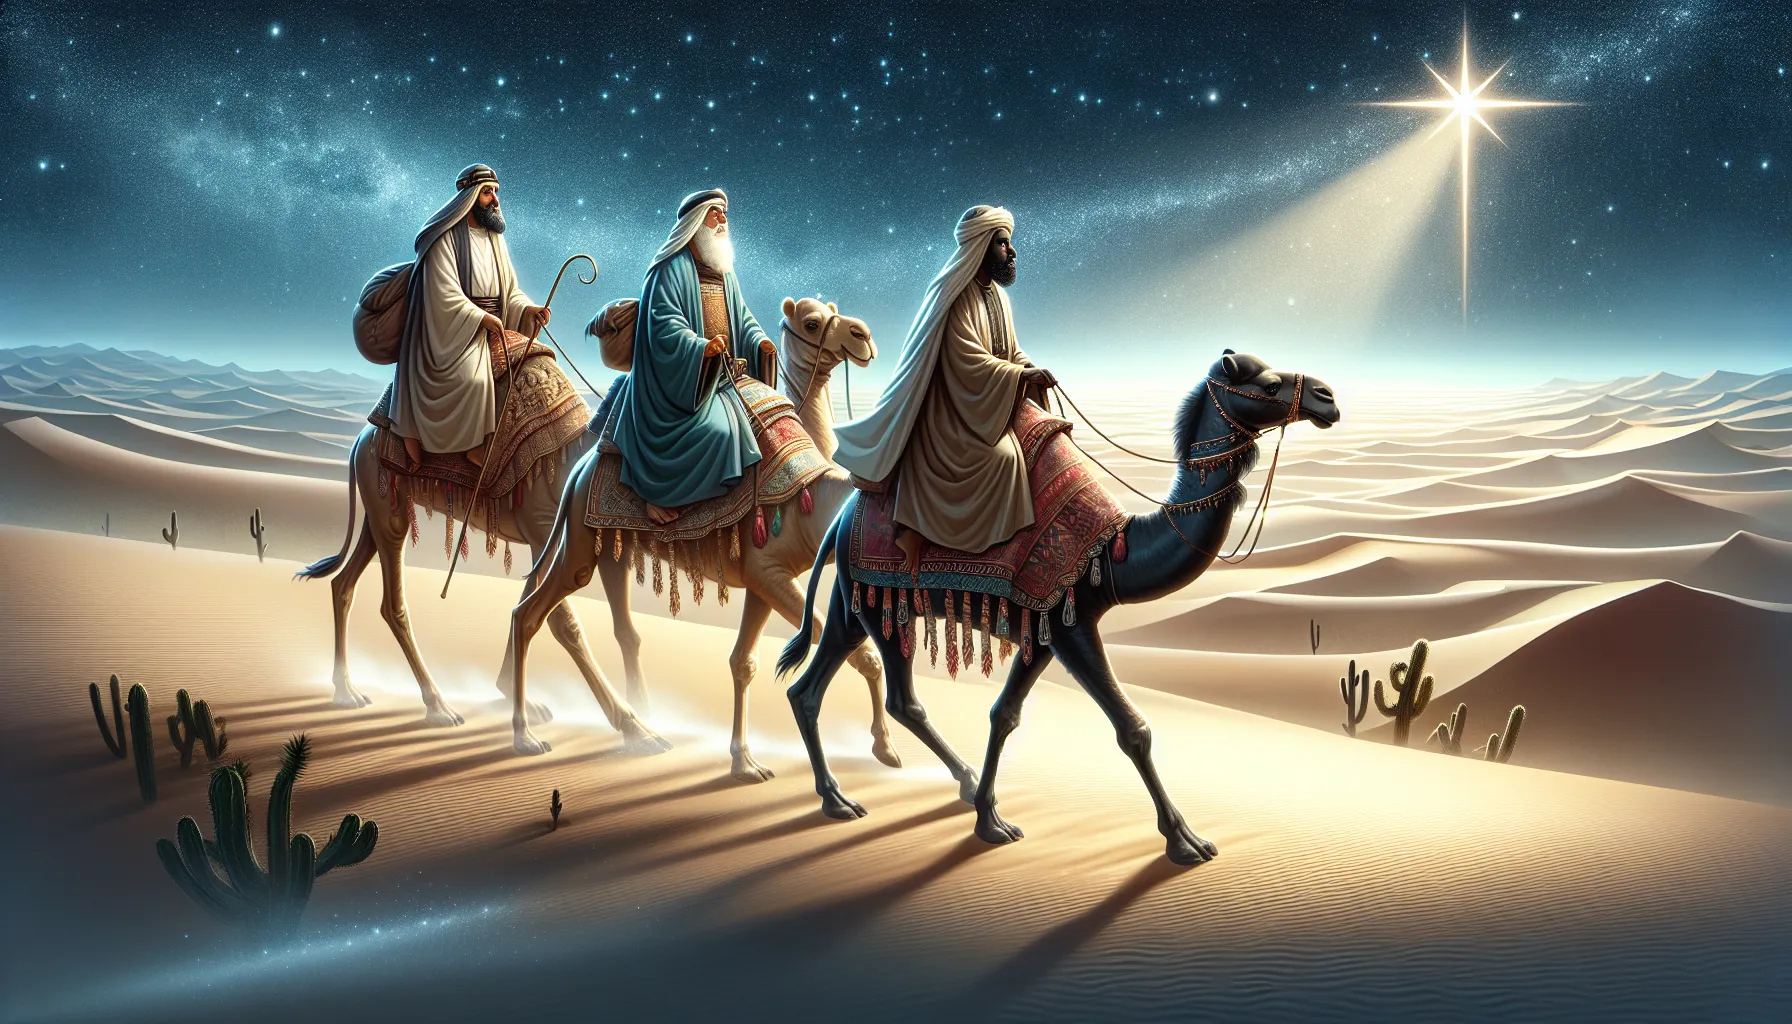 Imagen de los Reyes Magos siguiendo la estrella hasta Belén, según la narración bíblica.